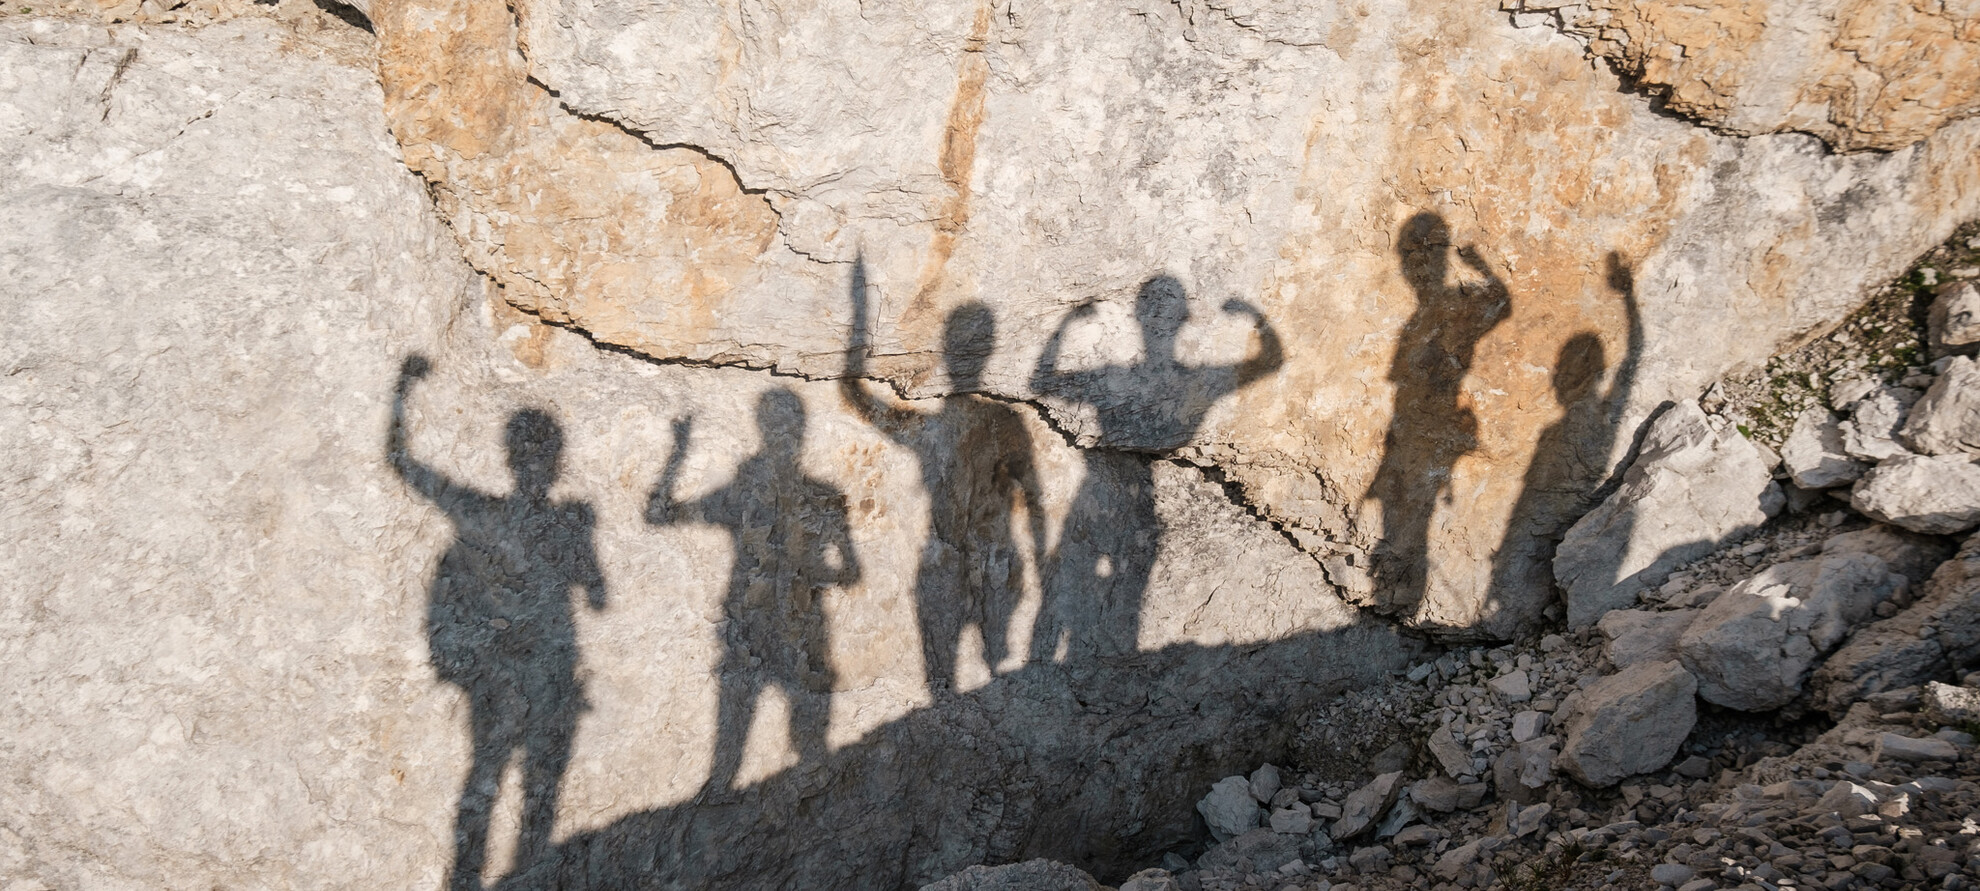 Sei alpinisti esultano per aver raggiunto la cima. Nella foto ci sono solo le loro ombre sulla superficie rocciosa della montagna. Braccia sollevate e segni di vittoria: la soddisfazione di avercela fatta, insieme.